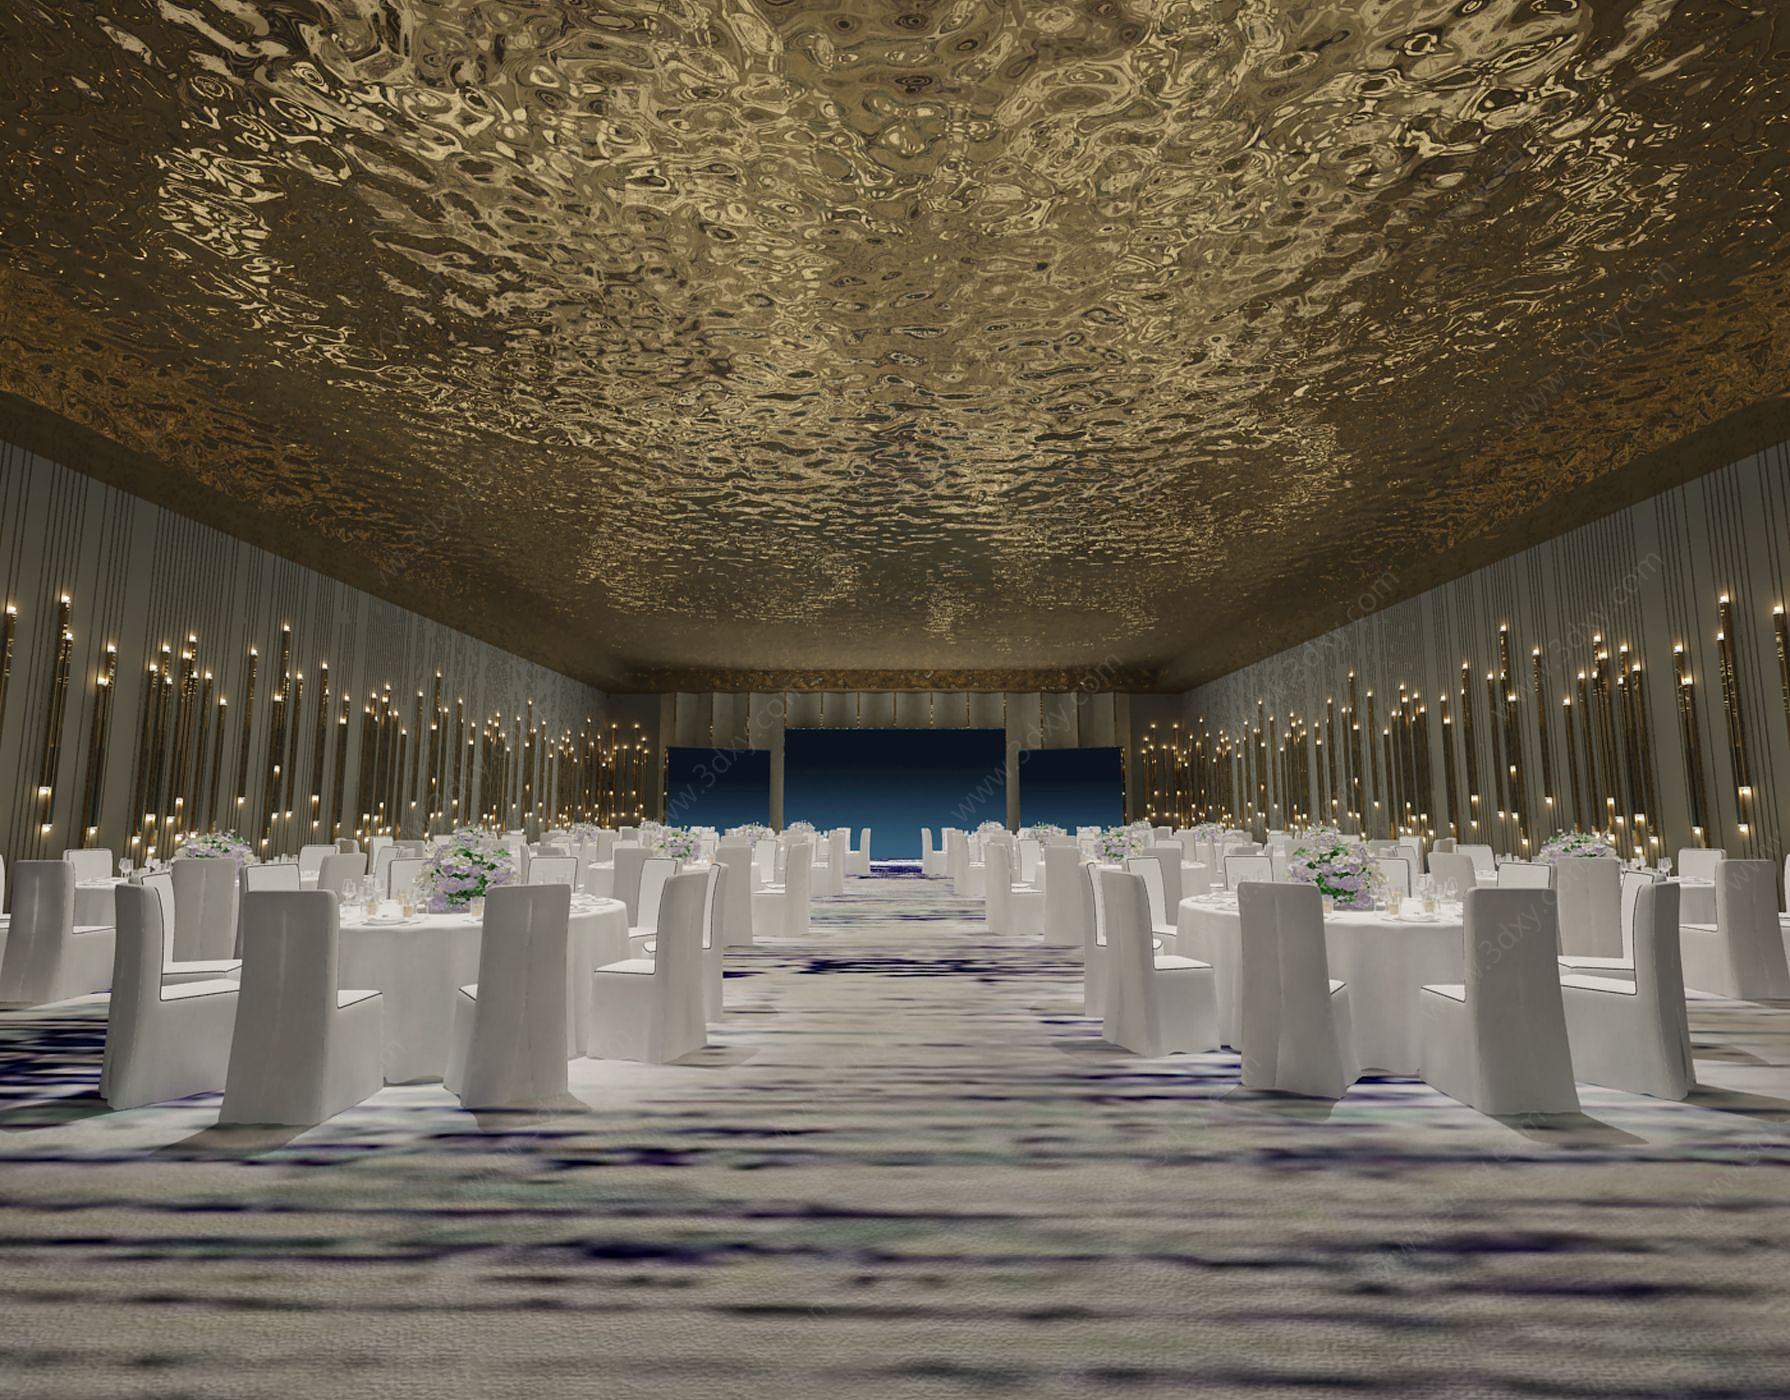 餐饮空间3D模型